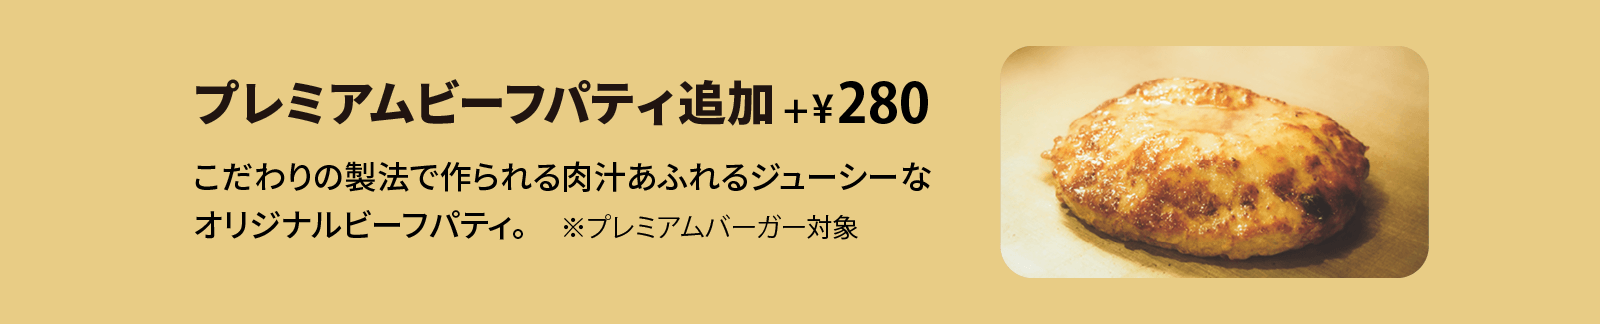 プレミアムビーフパティ追加 +¥280 こだわりの製法で作られる肉汁あふれるジューシーなオリジナルビーフパティ。※プレミアムバーガー対象